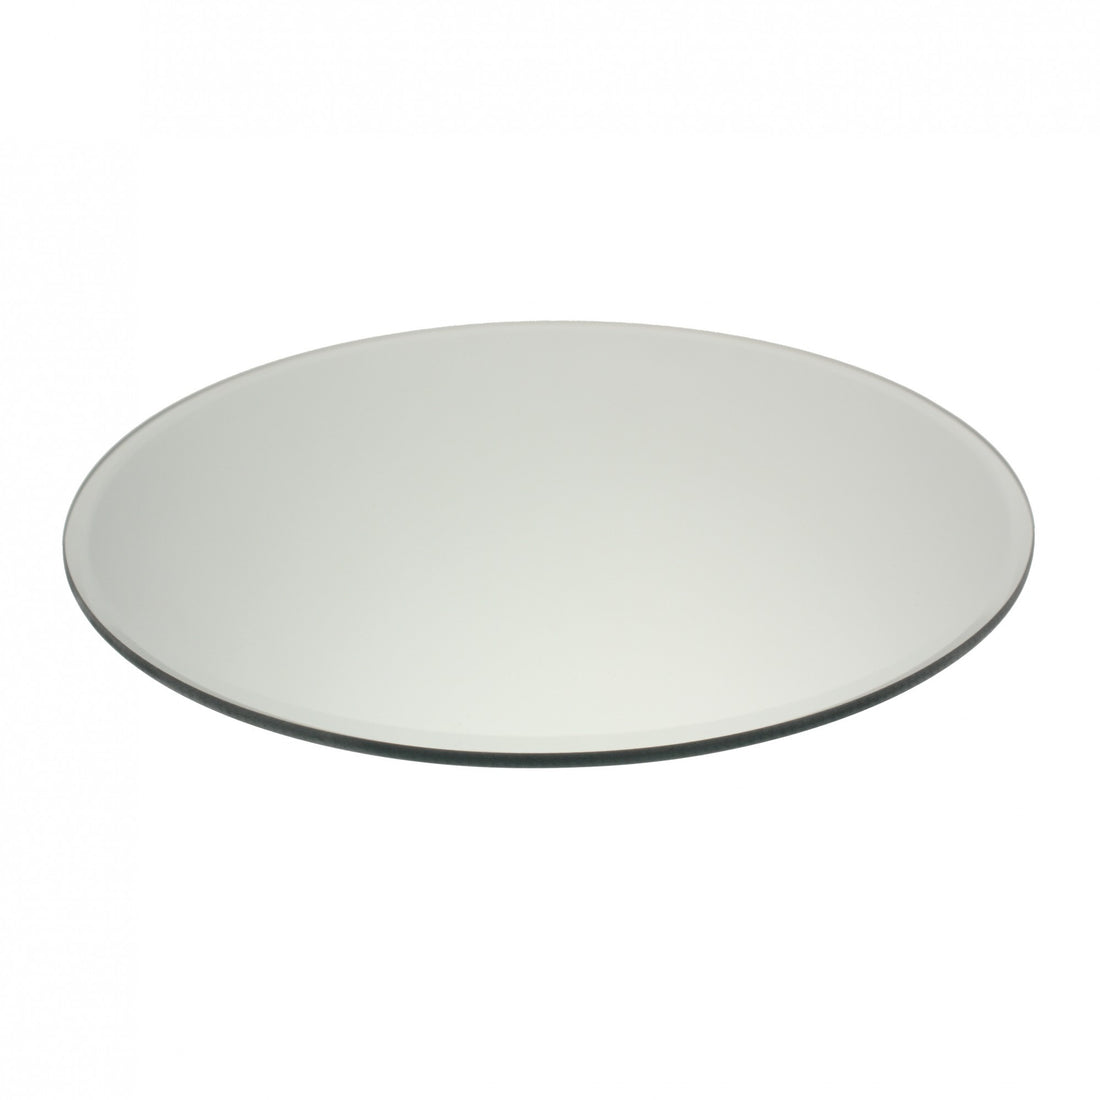 Round Mirror Plate 20cm